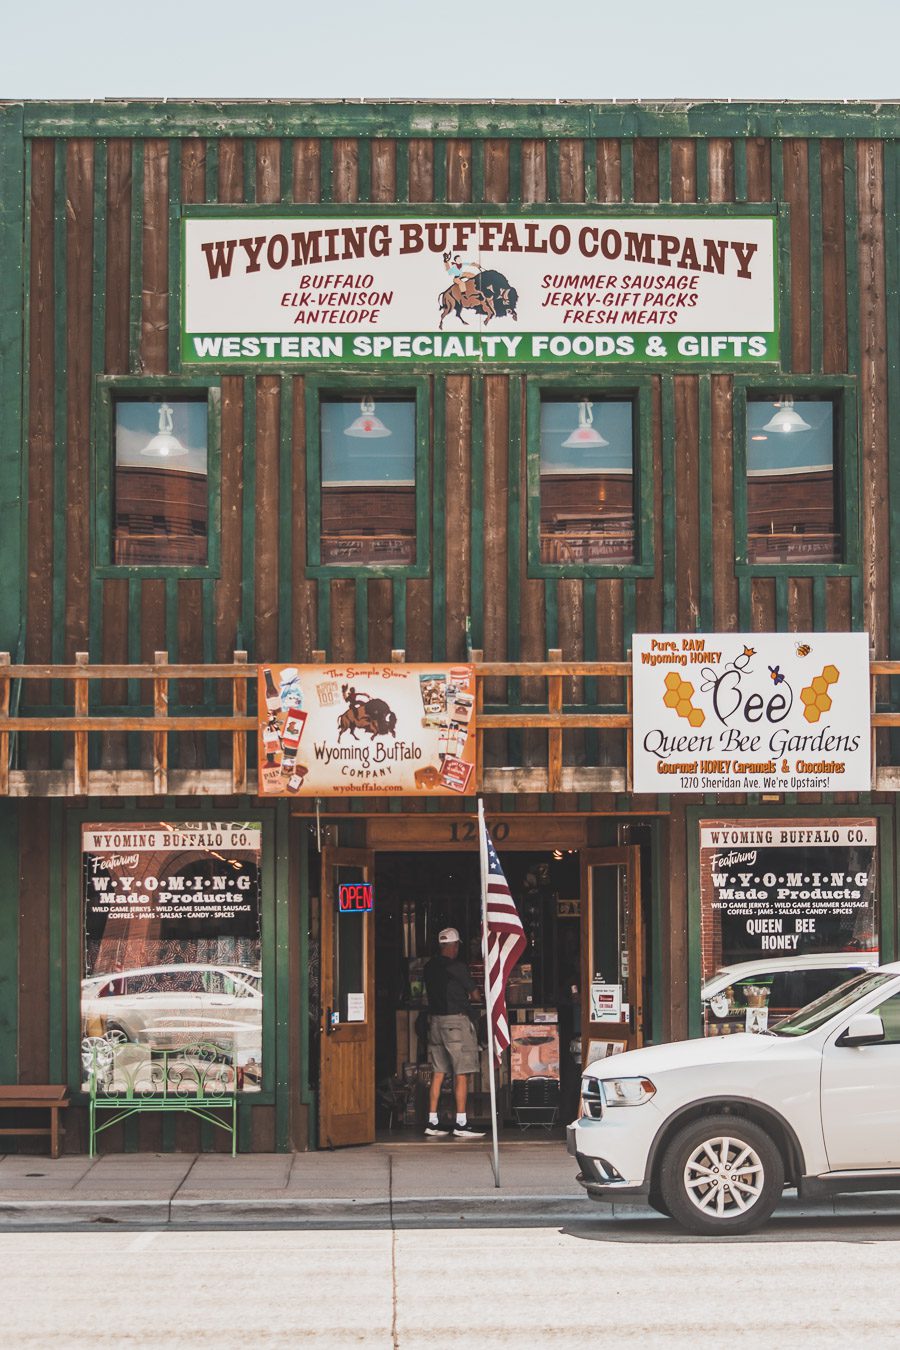 Embarquez pour un voyage de découverte et d'aventure alors que vous embarquez pour un road trip dans l'ouest américain de 2 semaines ! Explorez certains des paysages les plus époustouflants de l'Ouest américain. Vous visiterez des villes dynamiques, vous immergerez dans la culture unique de la région. Avec de nombreuses activités, attractions et merveilles naturelles à explorer comme Yellowstone, Las Vegas ou encore la route 66, ce sera à coup sûr un road trip inoubliable !